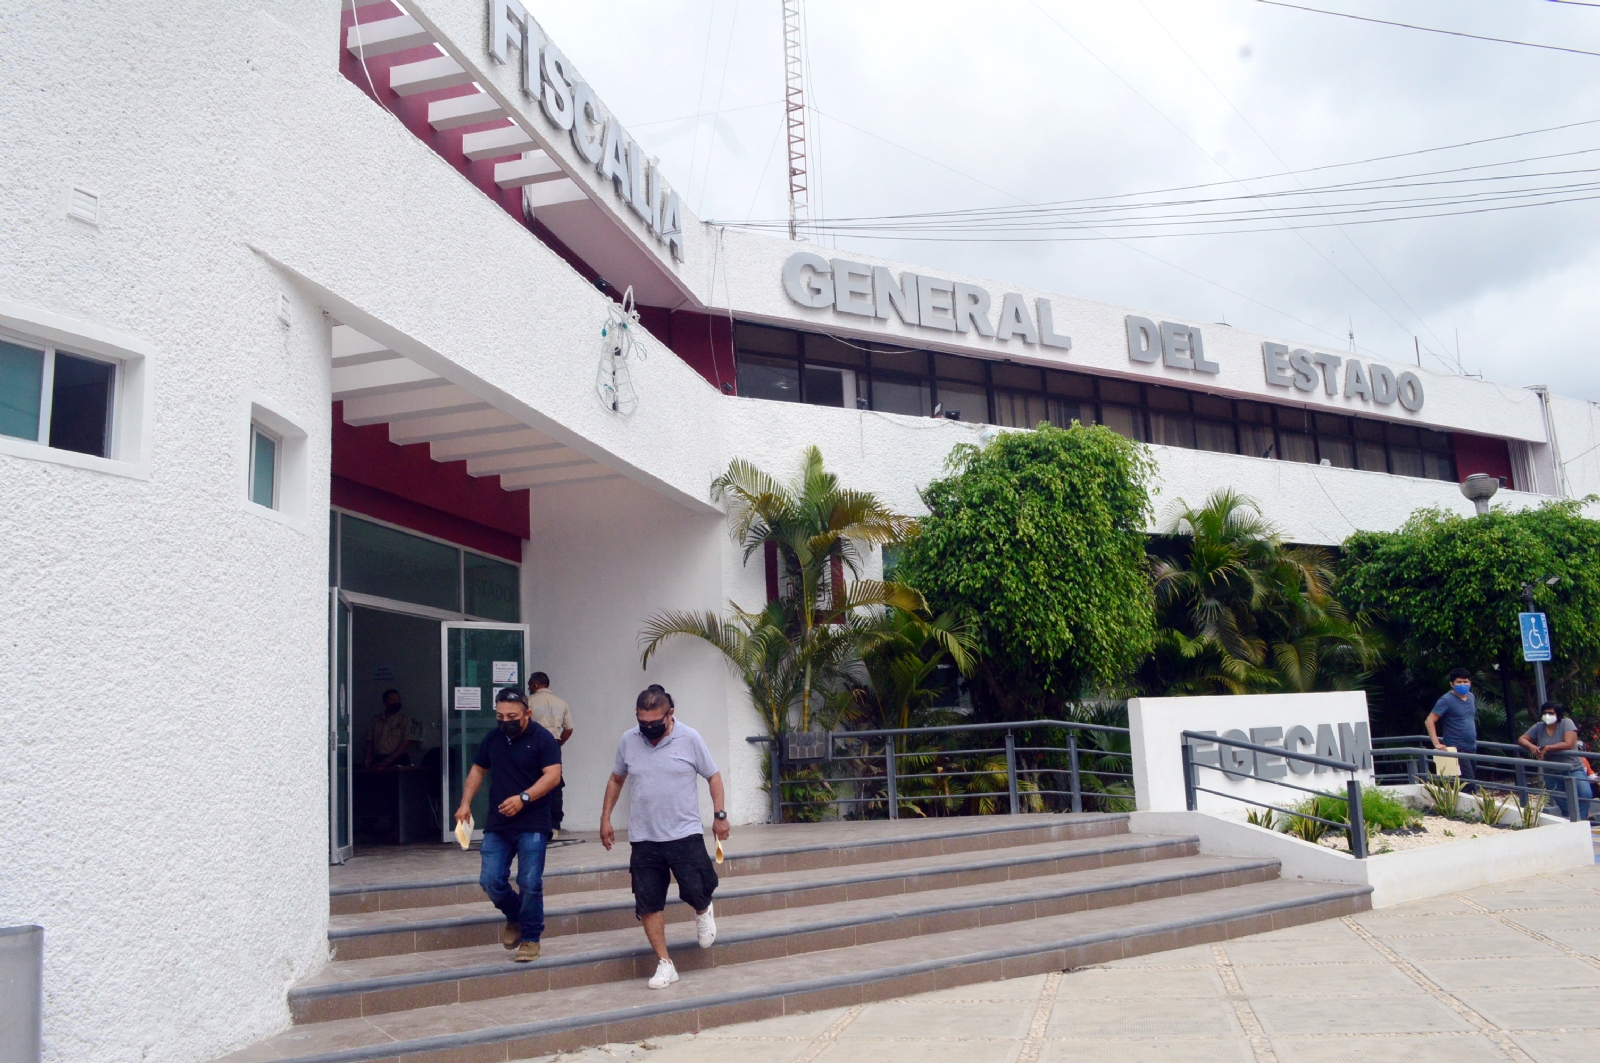 Los representantes de la seguridad en Campeche señalaron que las cifras en cuestión de delitos fueron disfrazadas